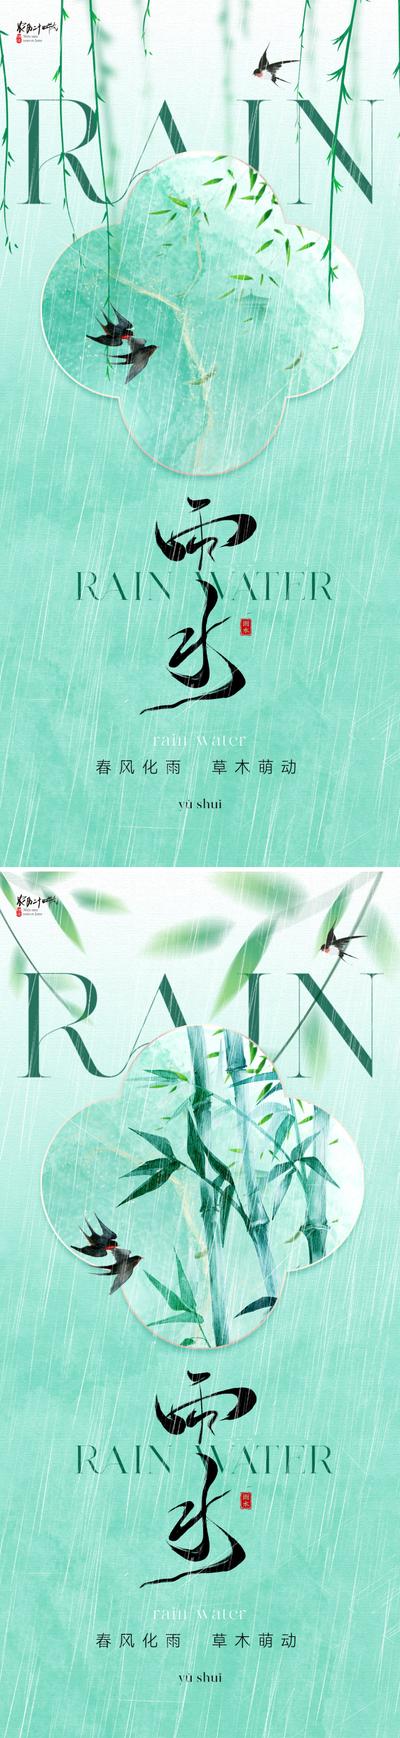 南门网 广告 海报 地产 雨水 节气 中式 柳树 柳叶 竹叶 竹子 新中式 绿色 春天 下雨 水滴 清新 唯美